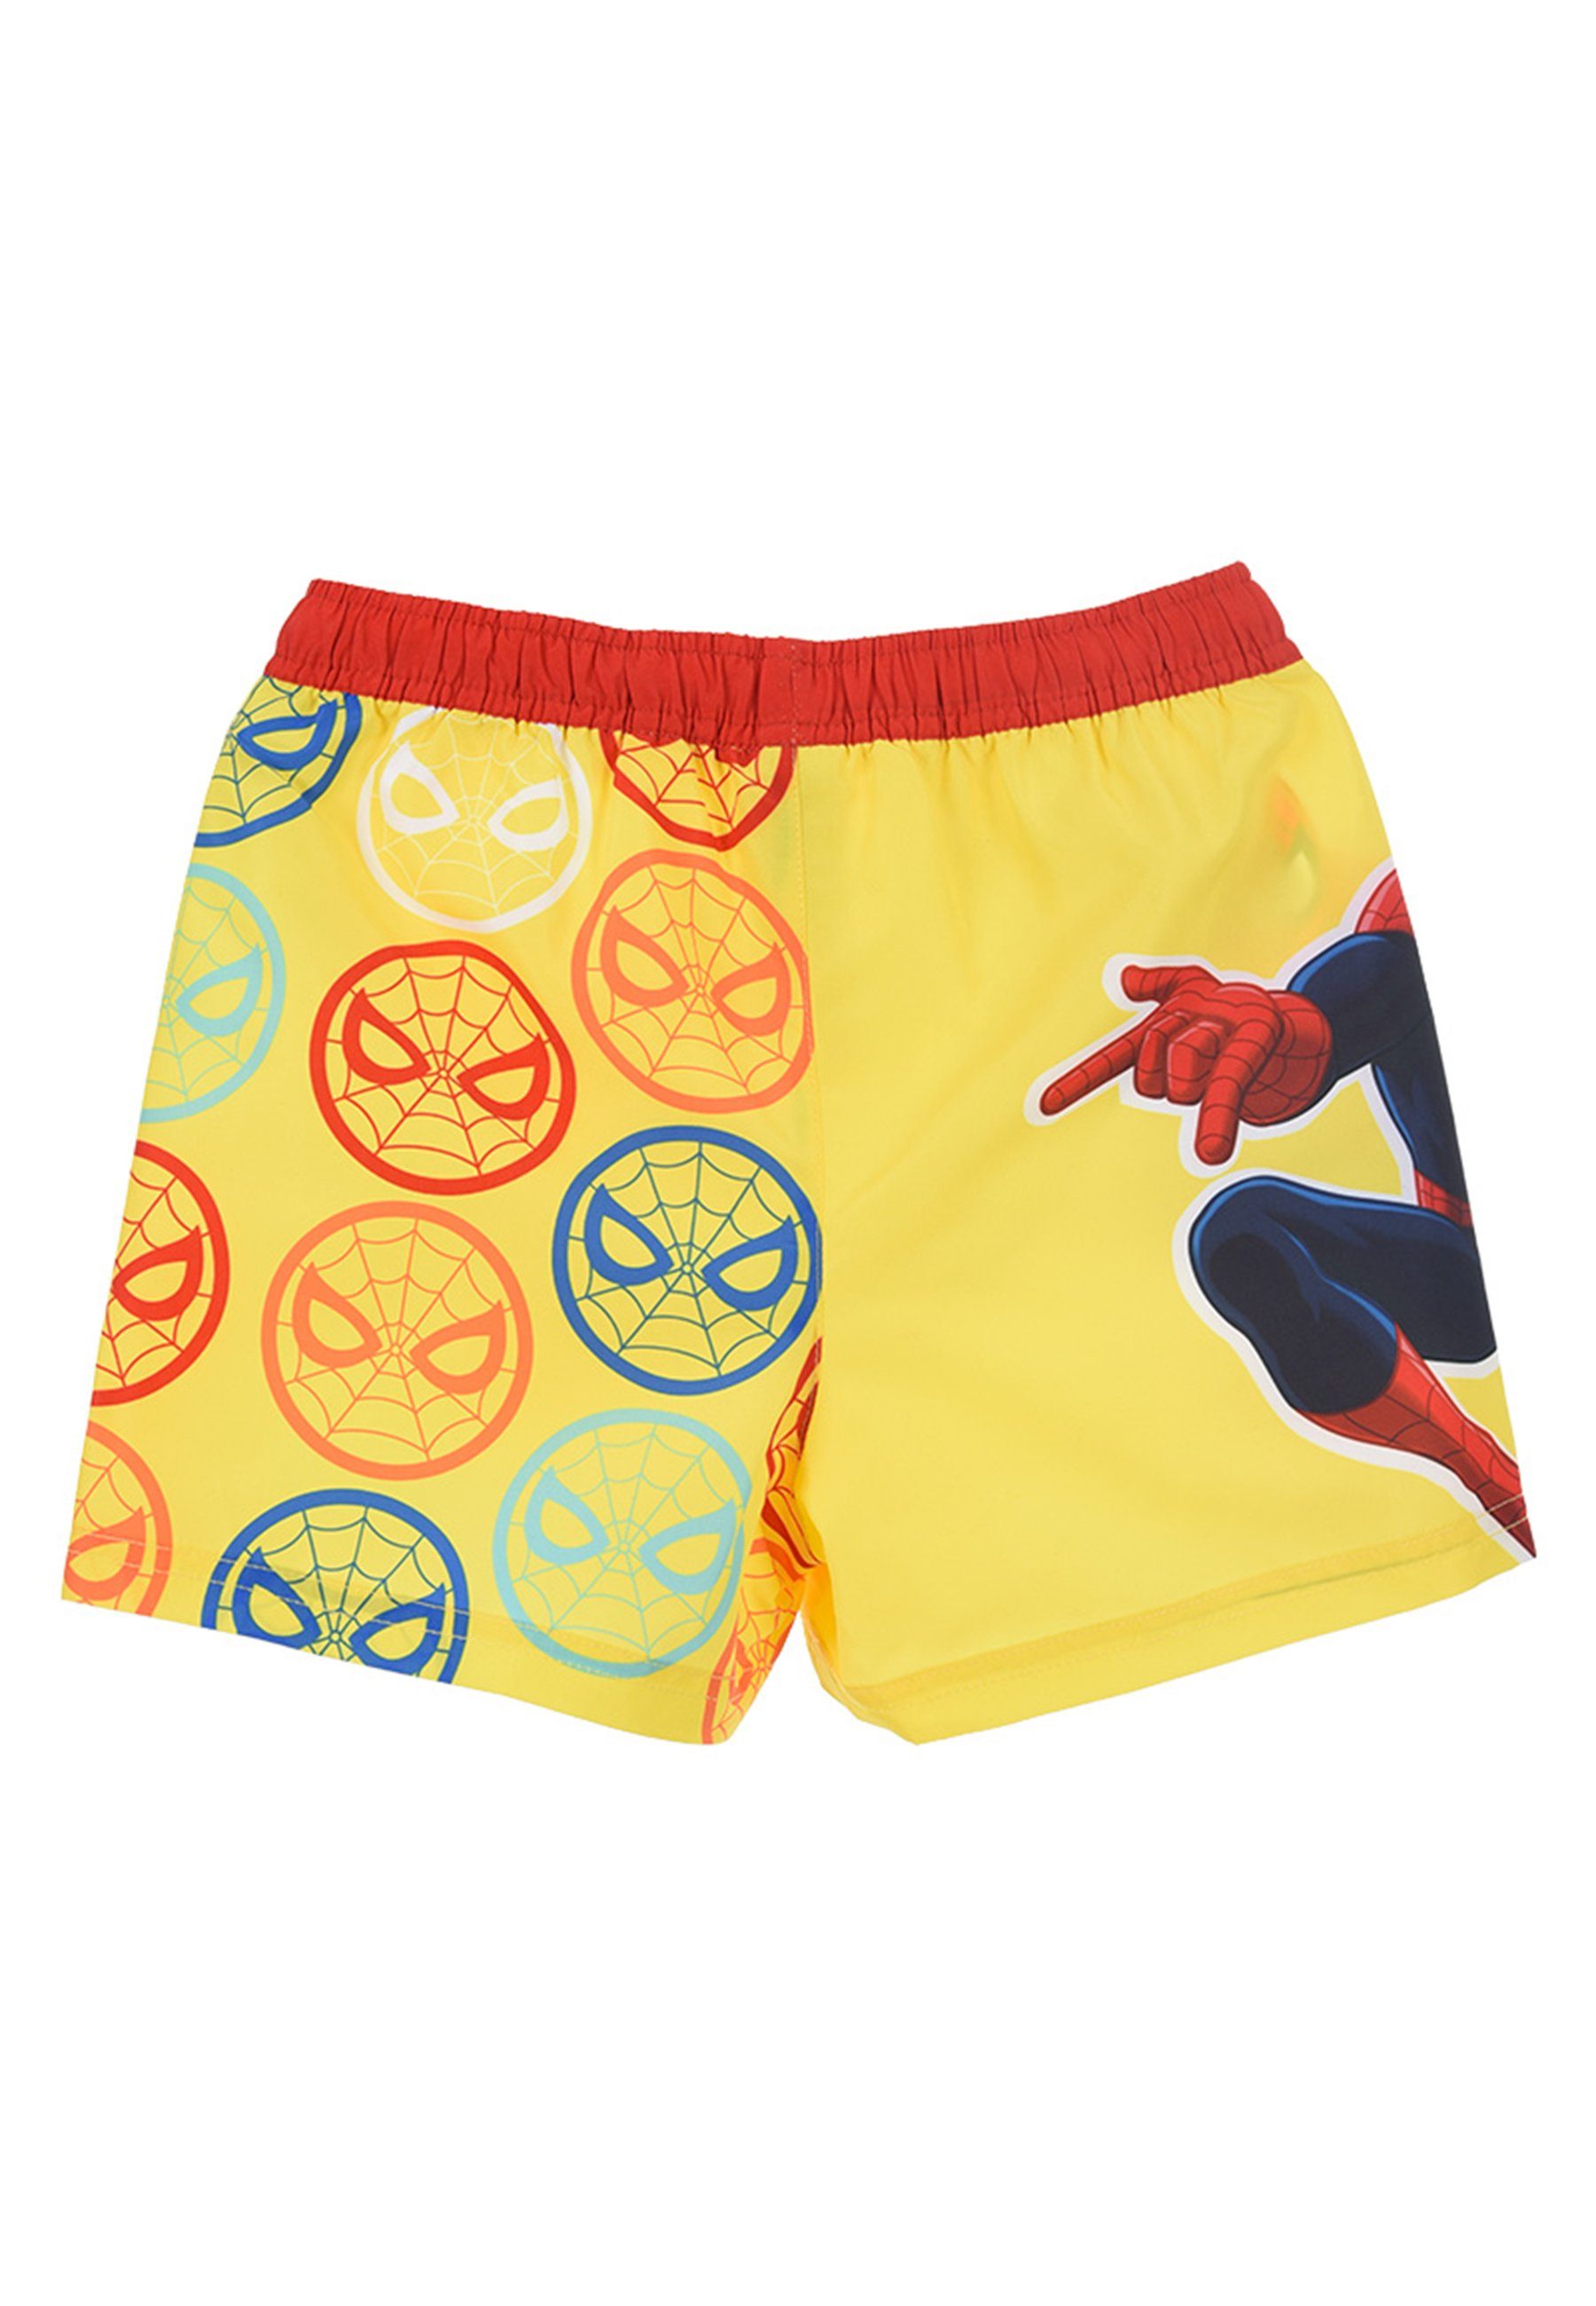 Spiderman Badeshorts Marvel Badepants Gelb Jungen Kinder Badehose Bermuda-Shorts